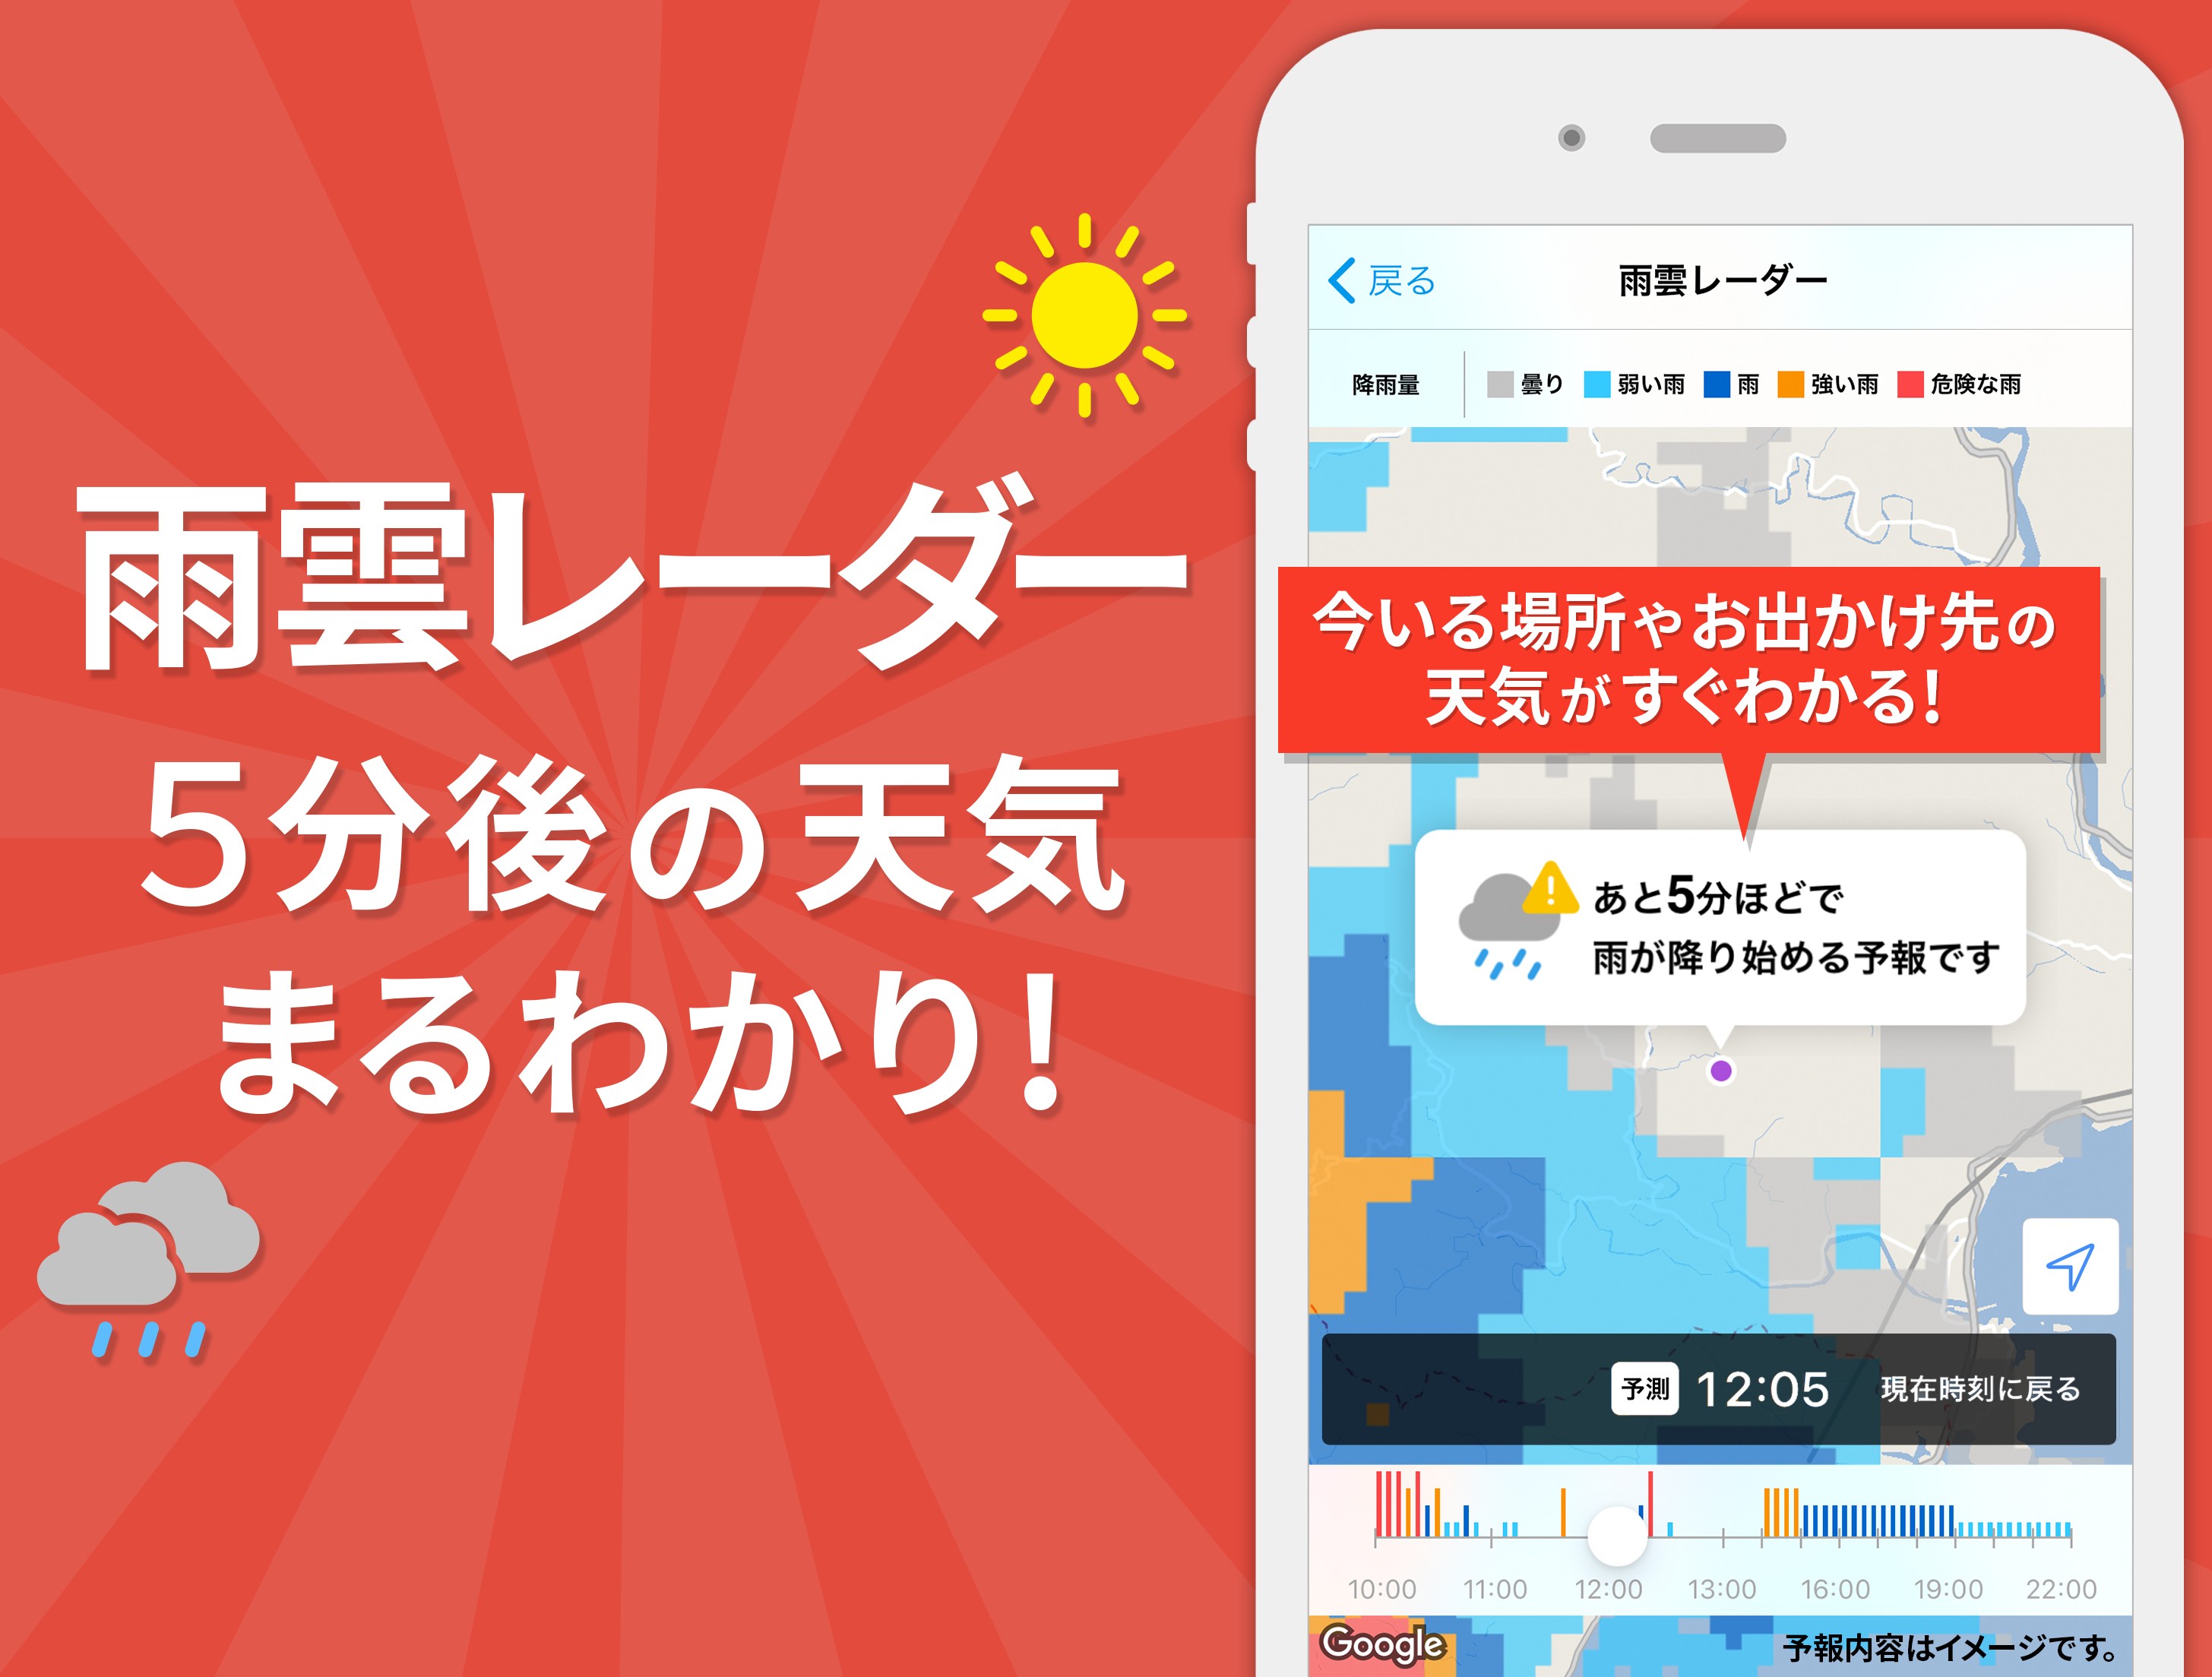 50 Android ホーム 画面 カスタマイズ アニメ 最もダウンロードされたhd壁紙画像